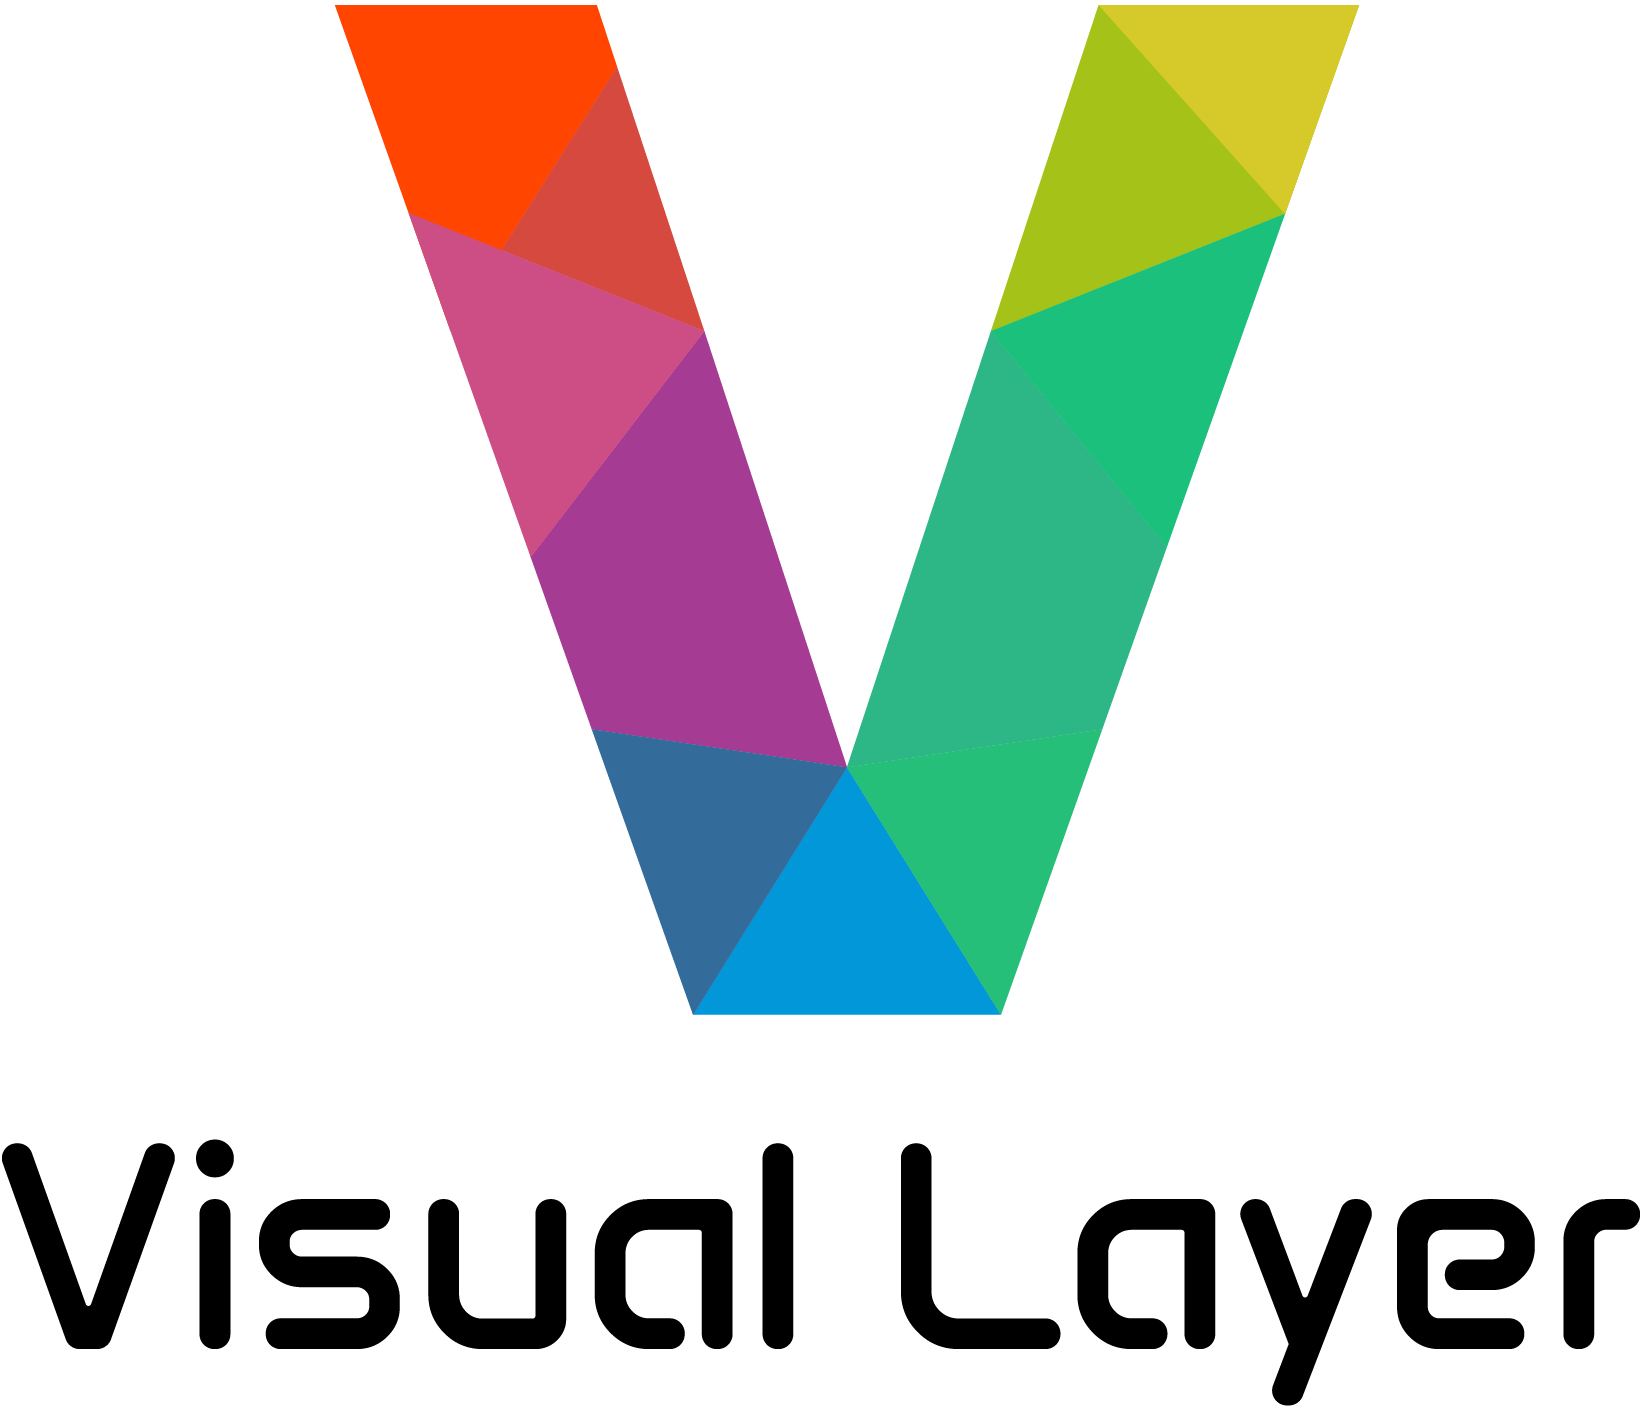 Visual Layer logo.